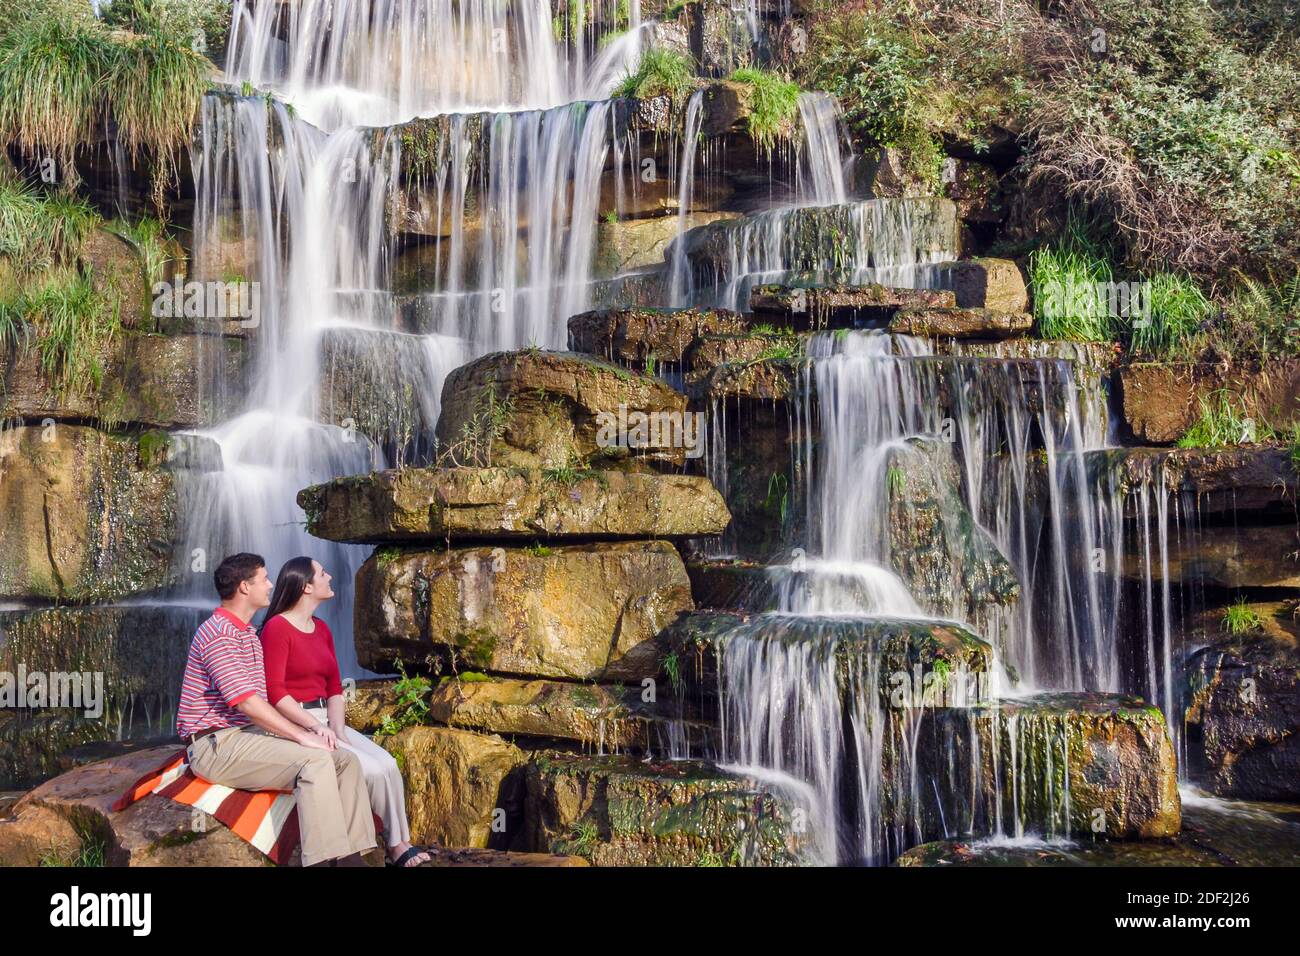 Alabama Tuscumbia Spring Creek Park Cold Water Falls, der größte von Menschen gemachte Wasserfall aus Naturstein der Welt, Paar, Mann, Frau, Stockfoto